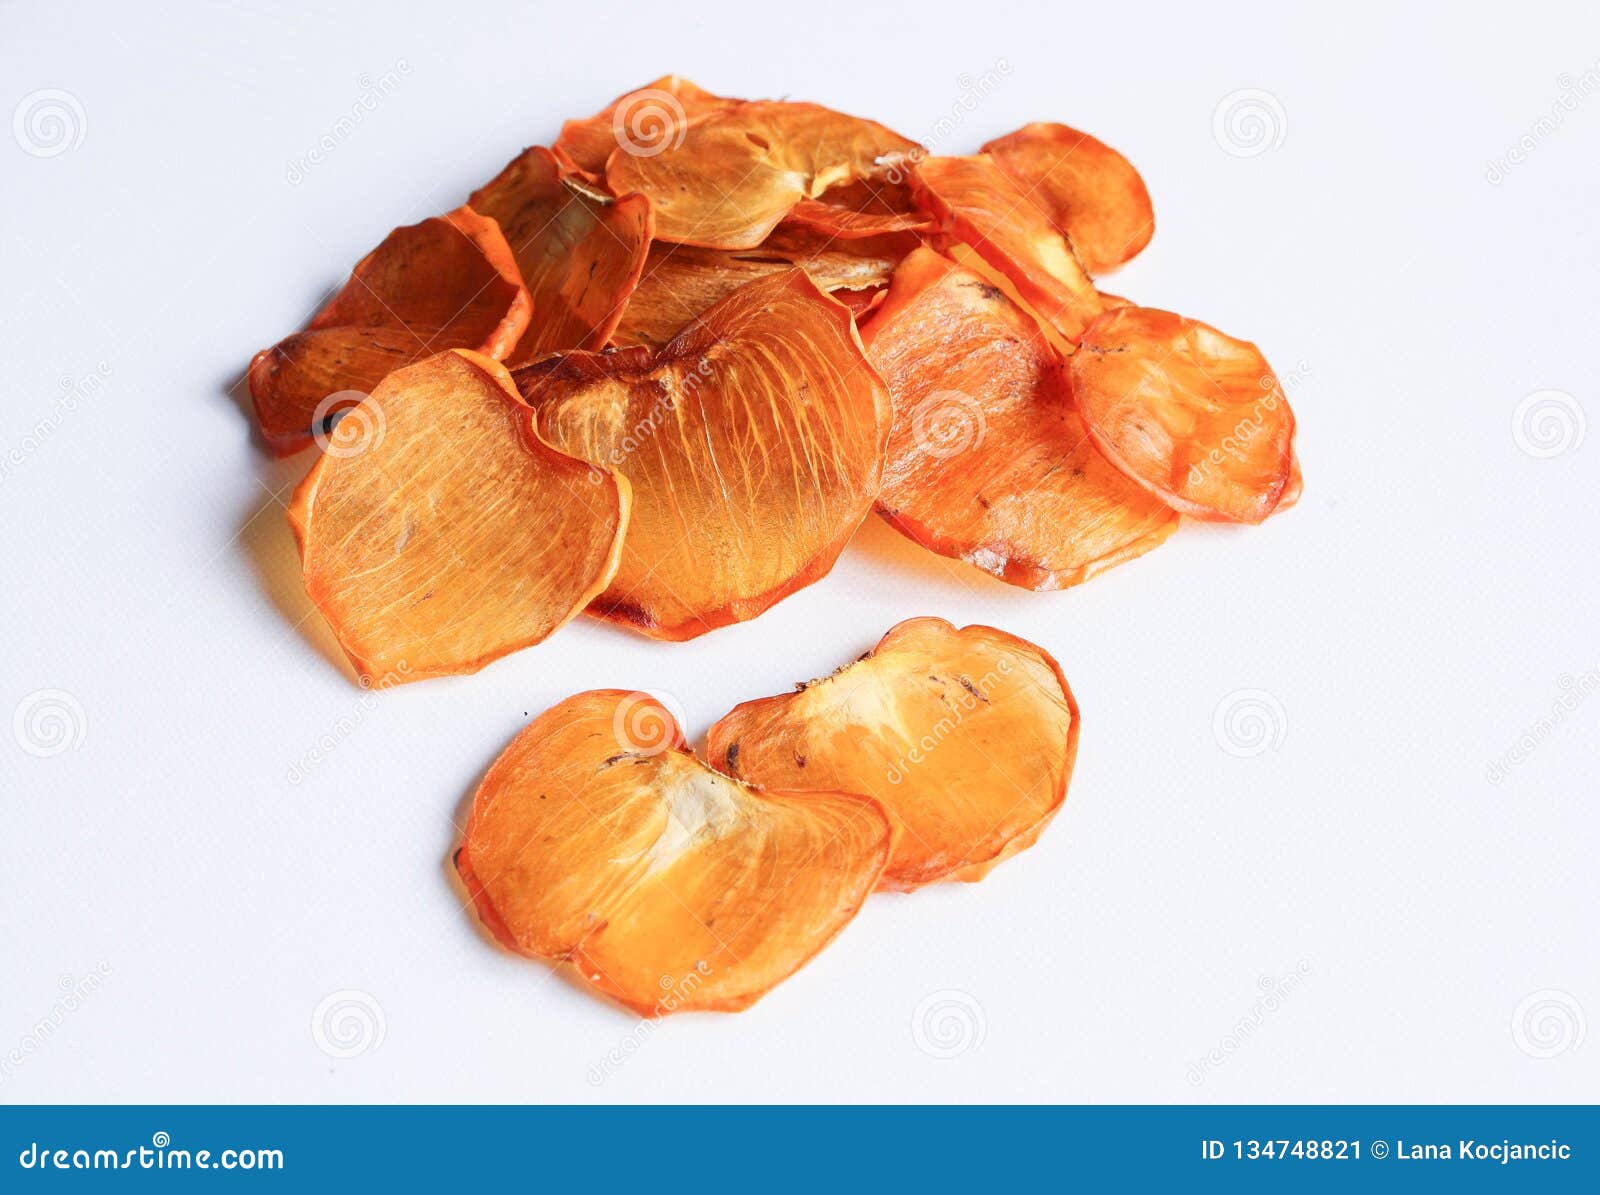 dried persimmon or kaki fruit slices  on white